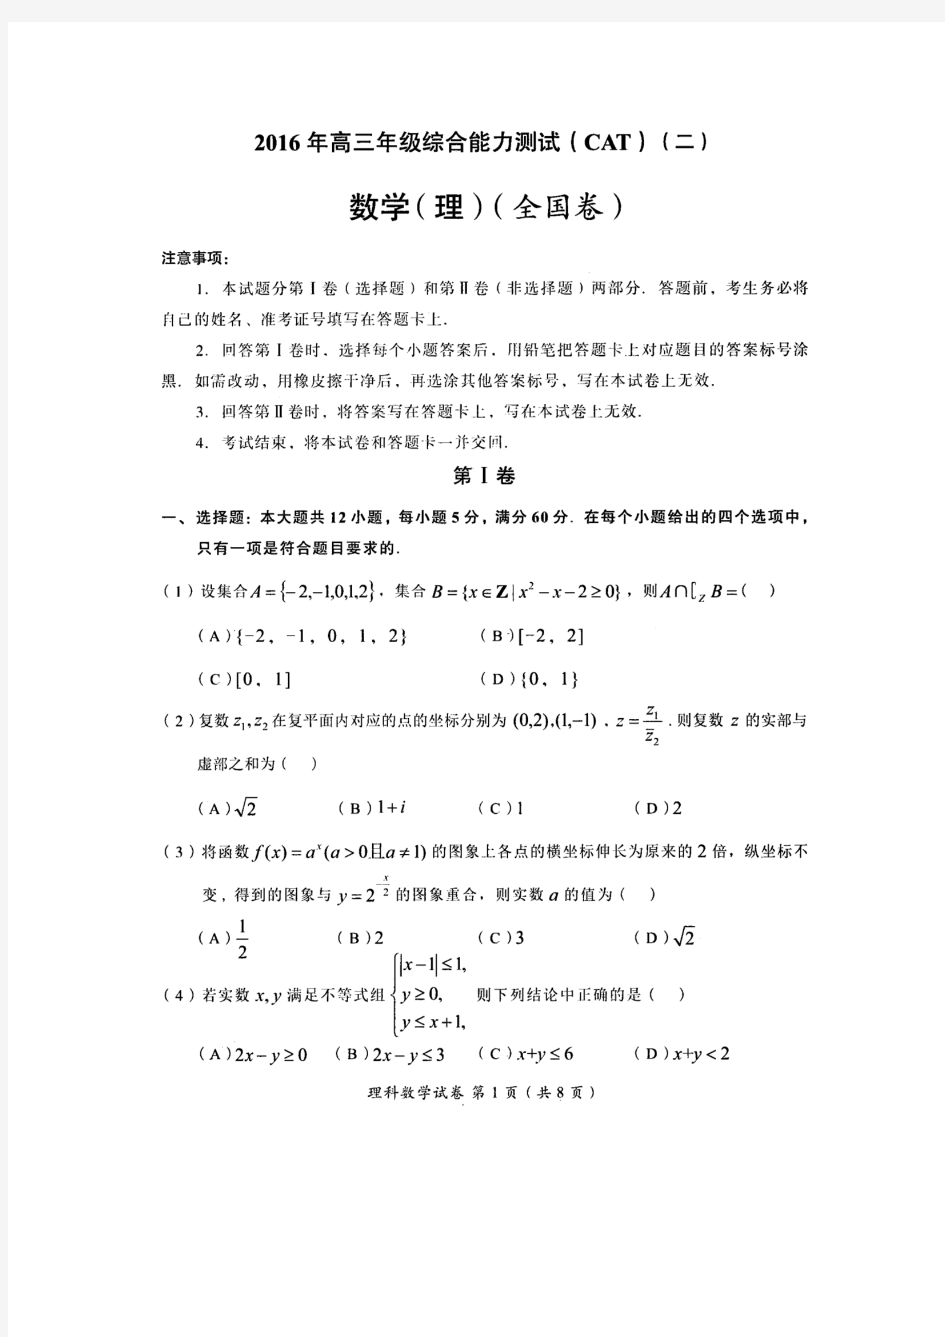 福建省龙岩市2016年高三年级综合能力测试(二)理数(扫描版)